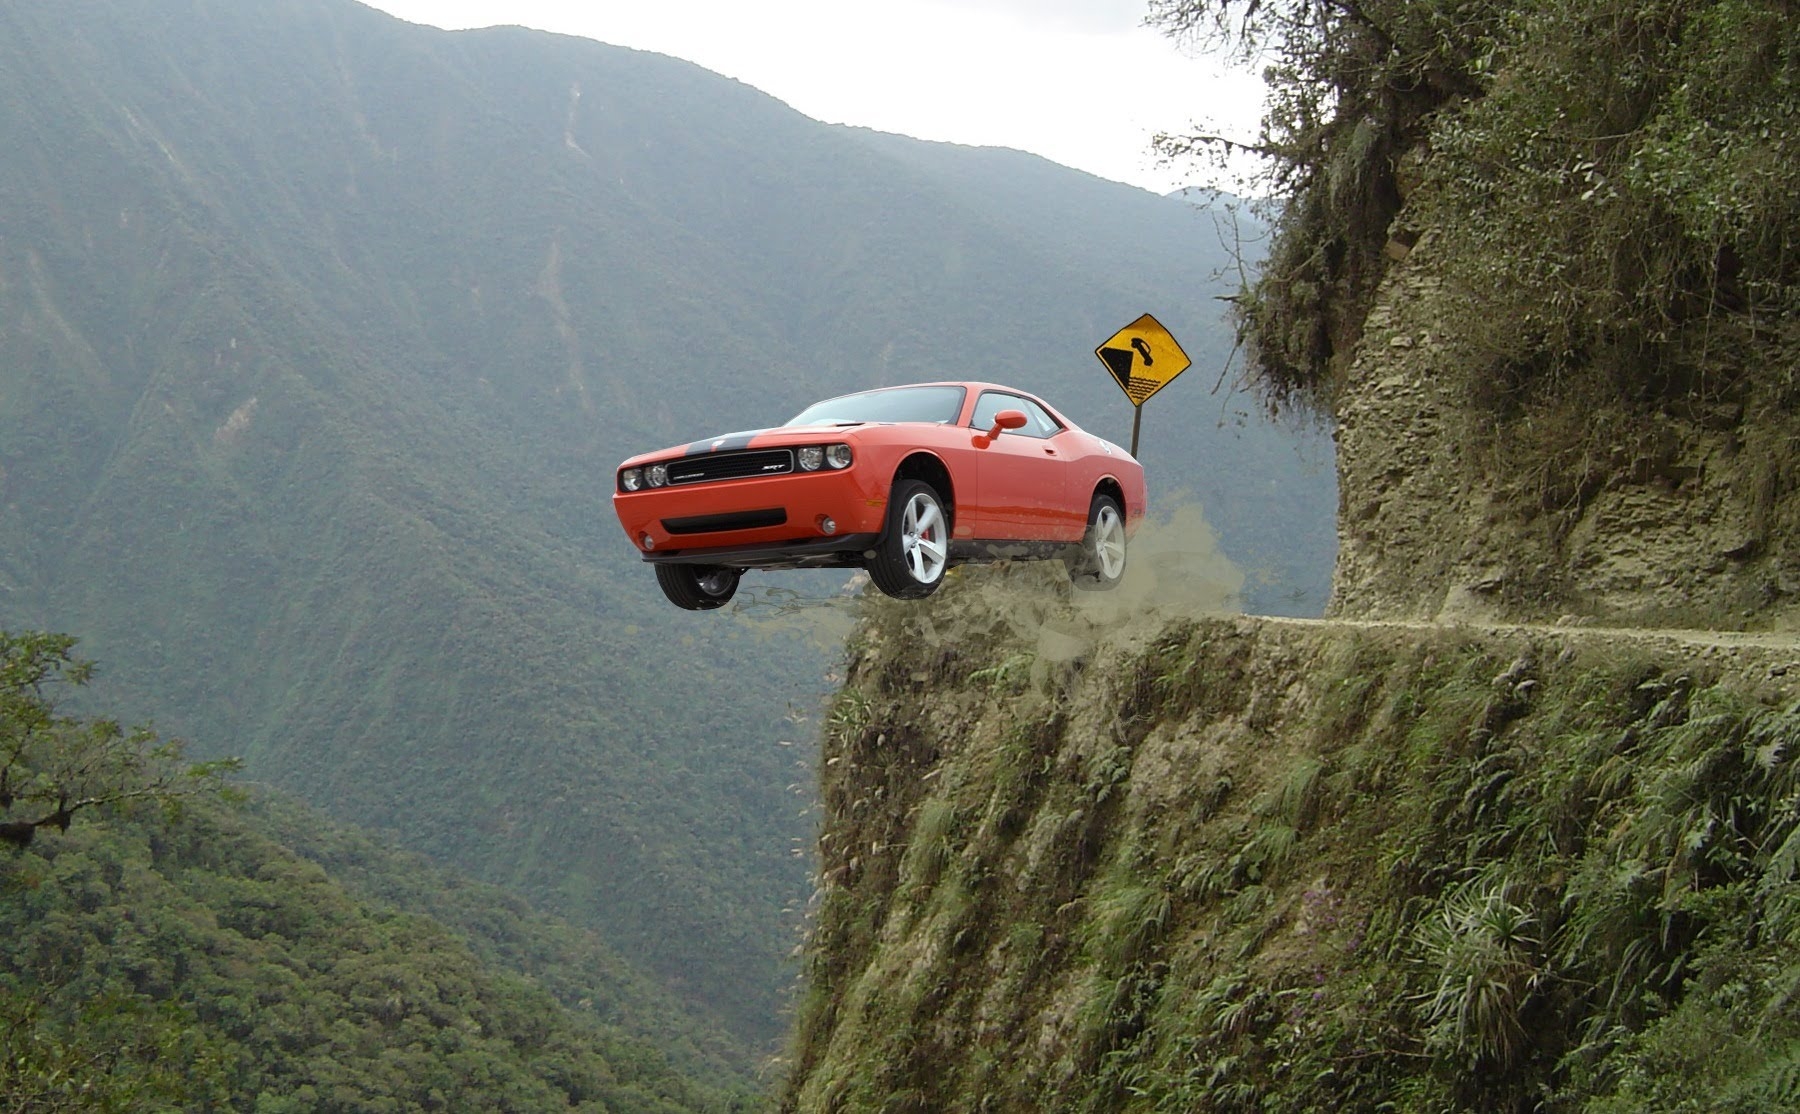 World s com. Машина на обрыве. Машина в горах. Машина падает с горы. Машина над пропастью.